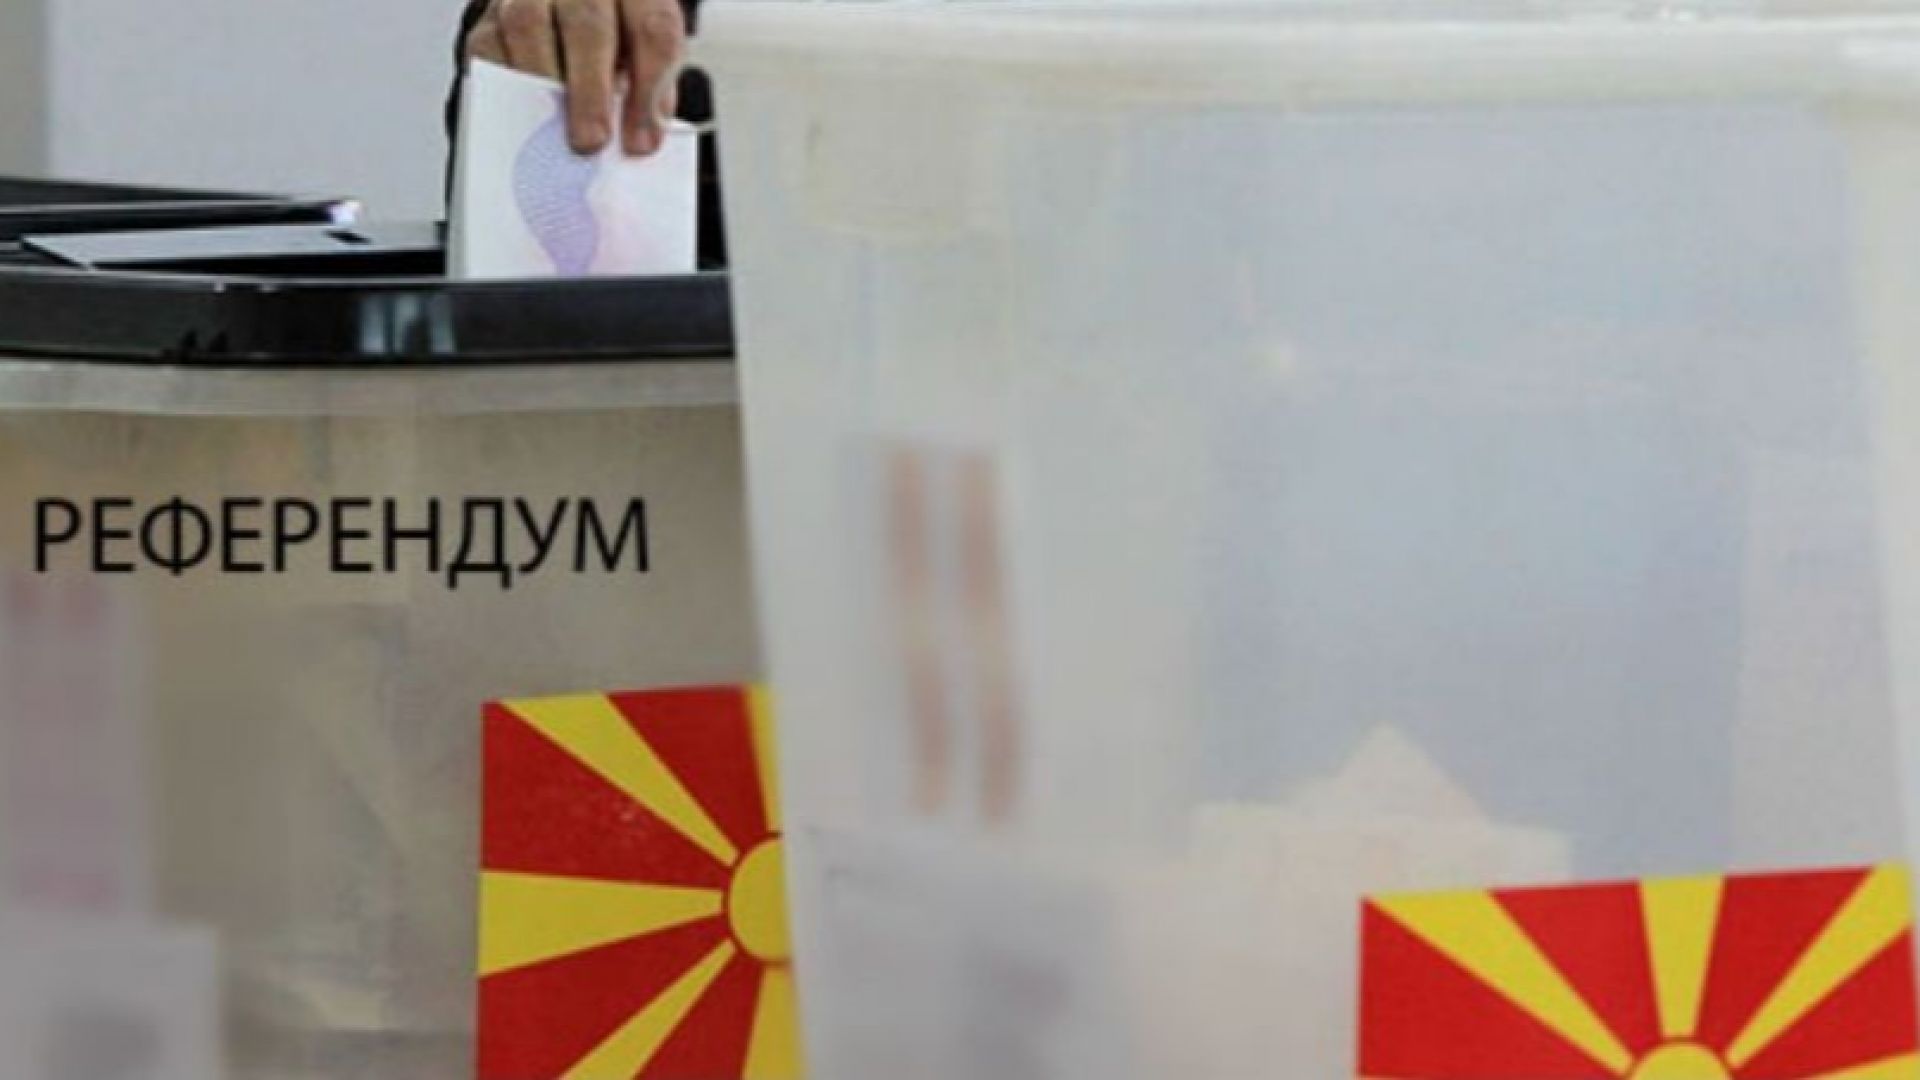 Съединените щати поздравяват резултатите от референдума в Република Македония на